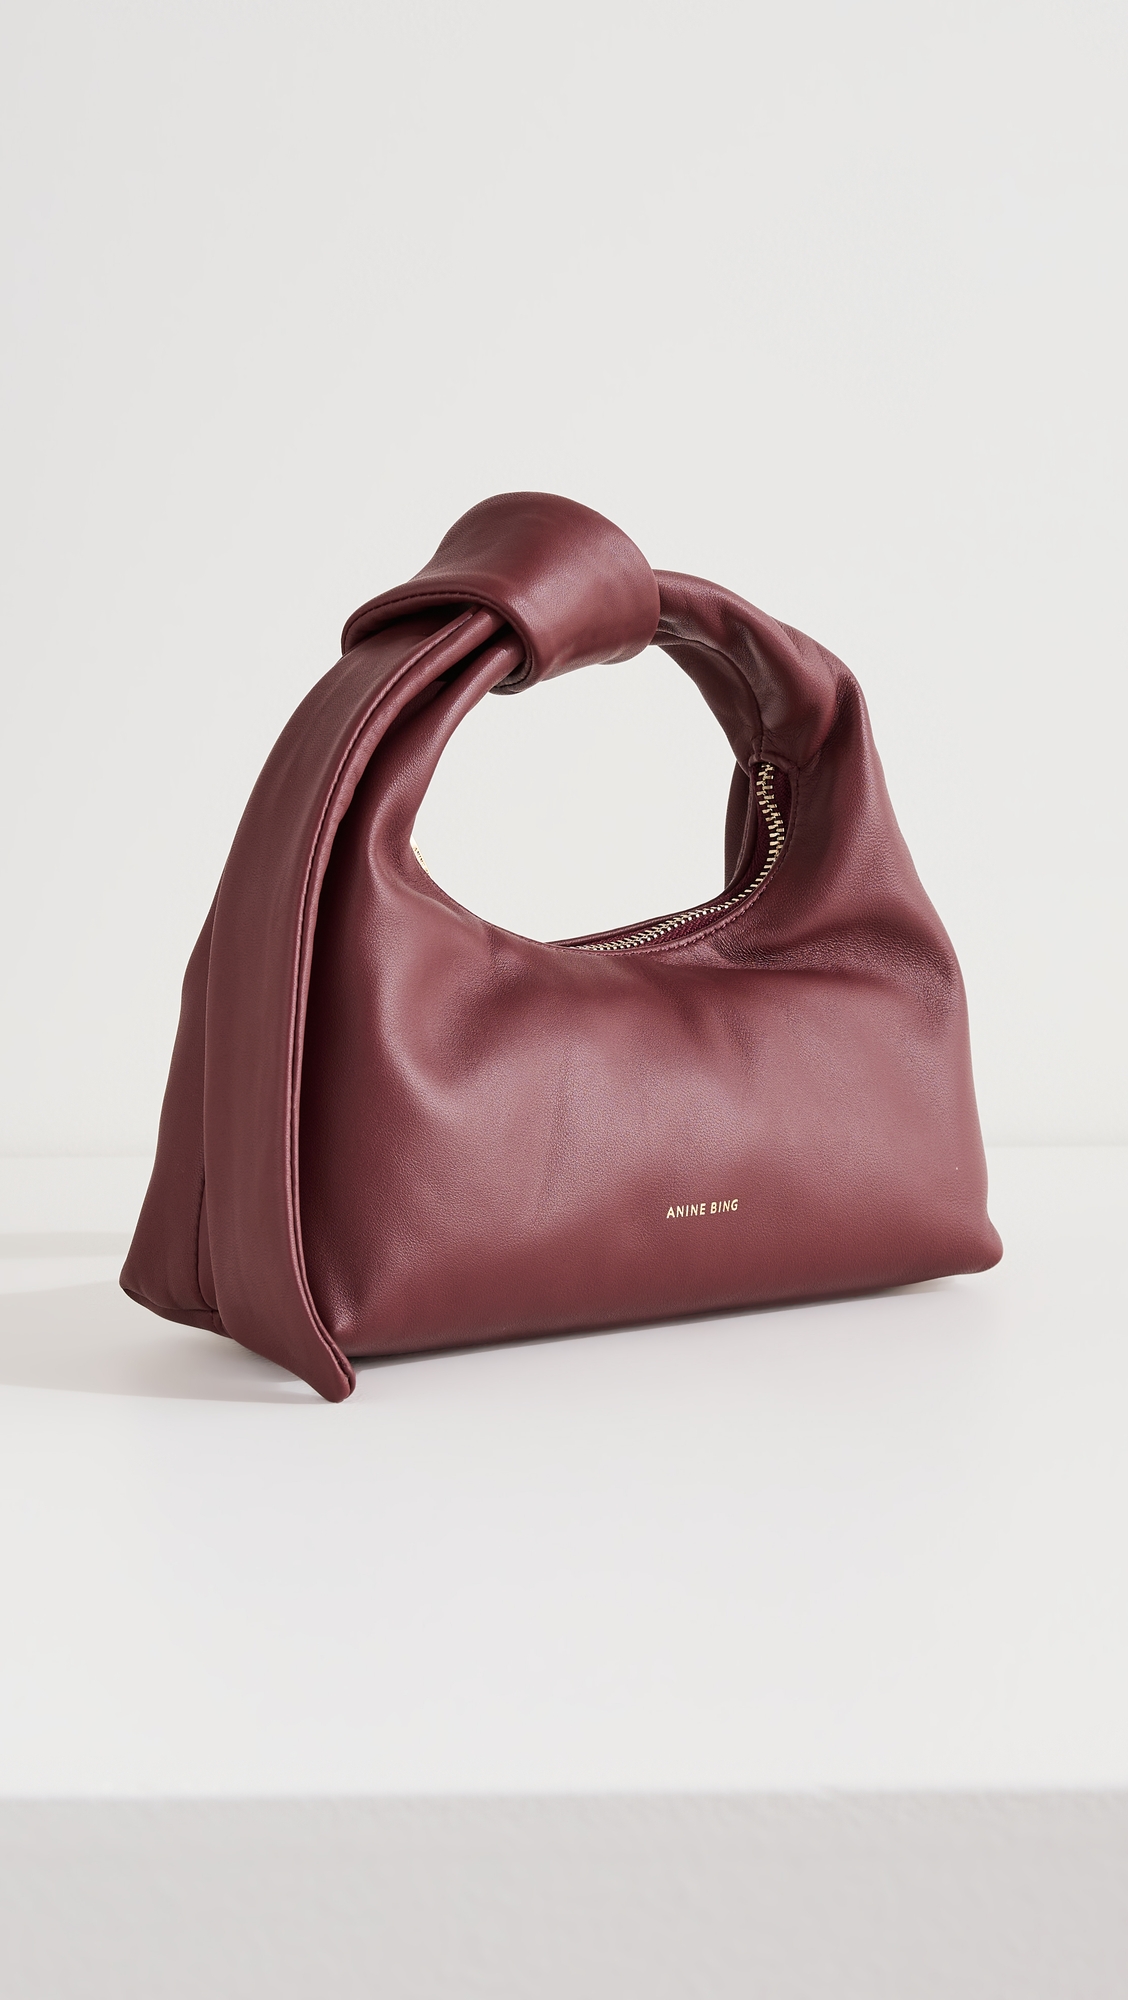 Designer Bags Under $1000 - 21,515 For Sale on 1stDibs  designer bags  under 1000 dollars, louis vuitton bags under 1000, designer bags under $1000